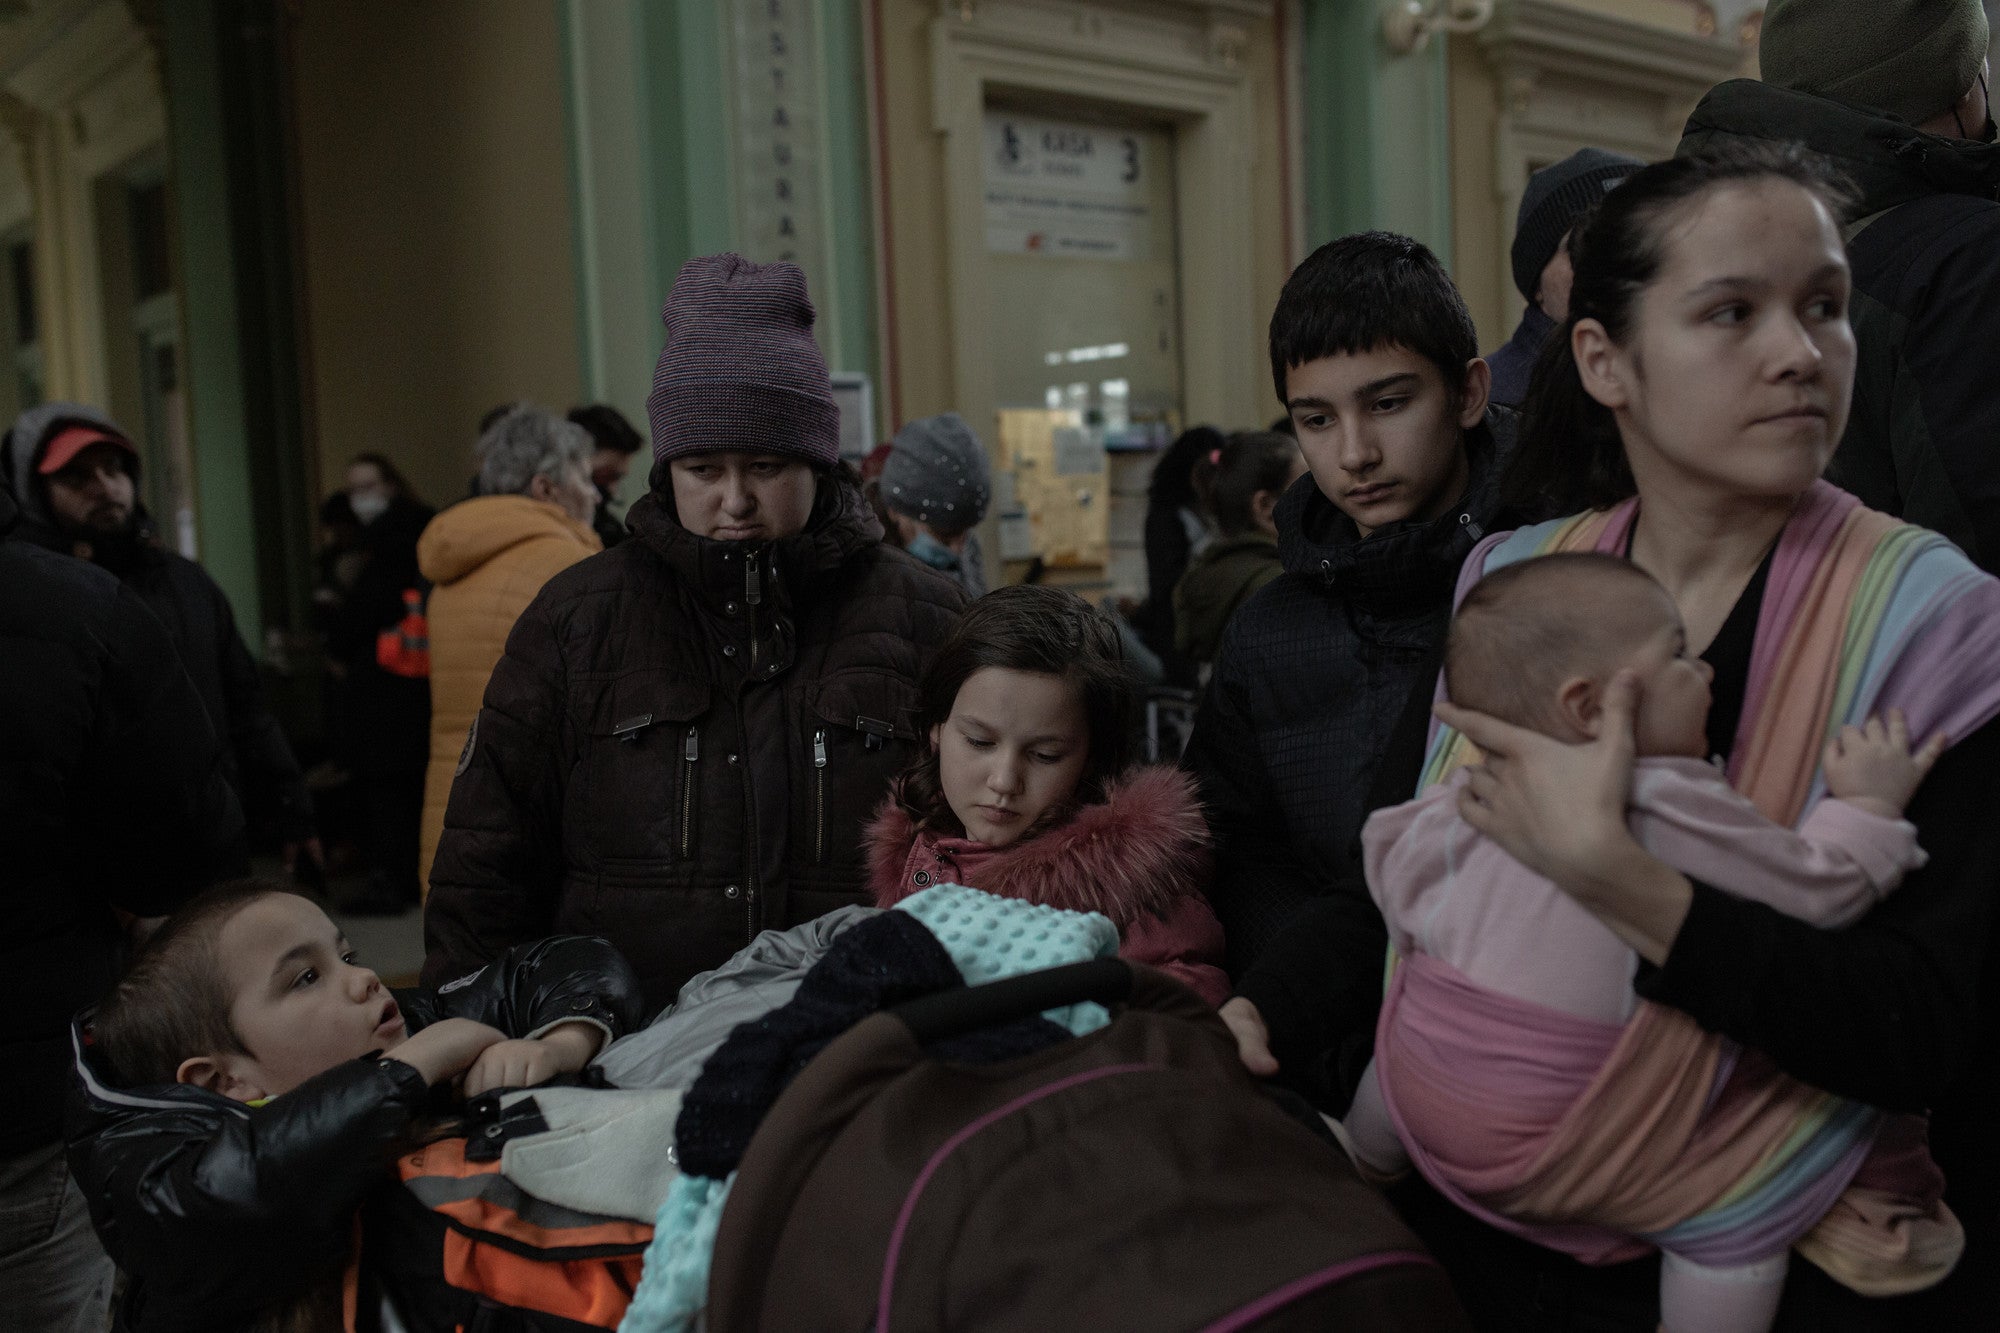 Refugiados ucranianos, incluidos muchos niños y mujeres, llegan en tren a la estación de Przemyl (Polonia).